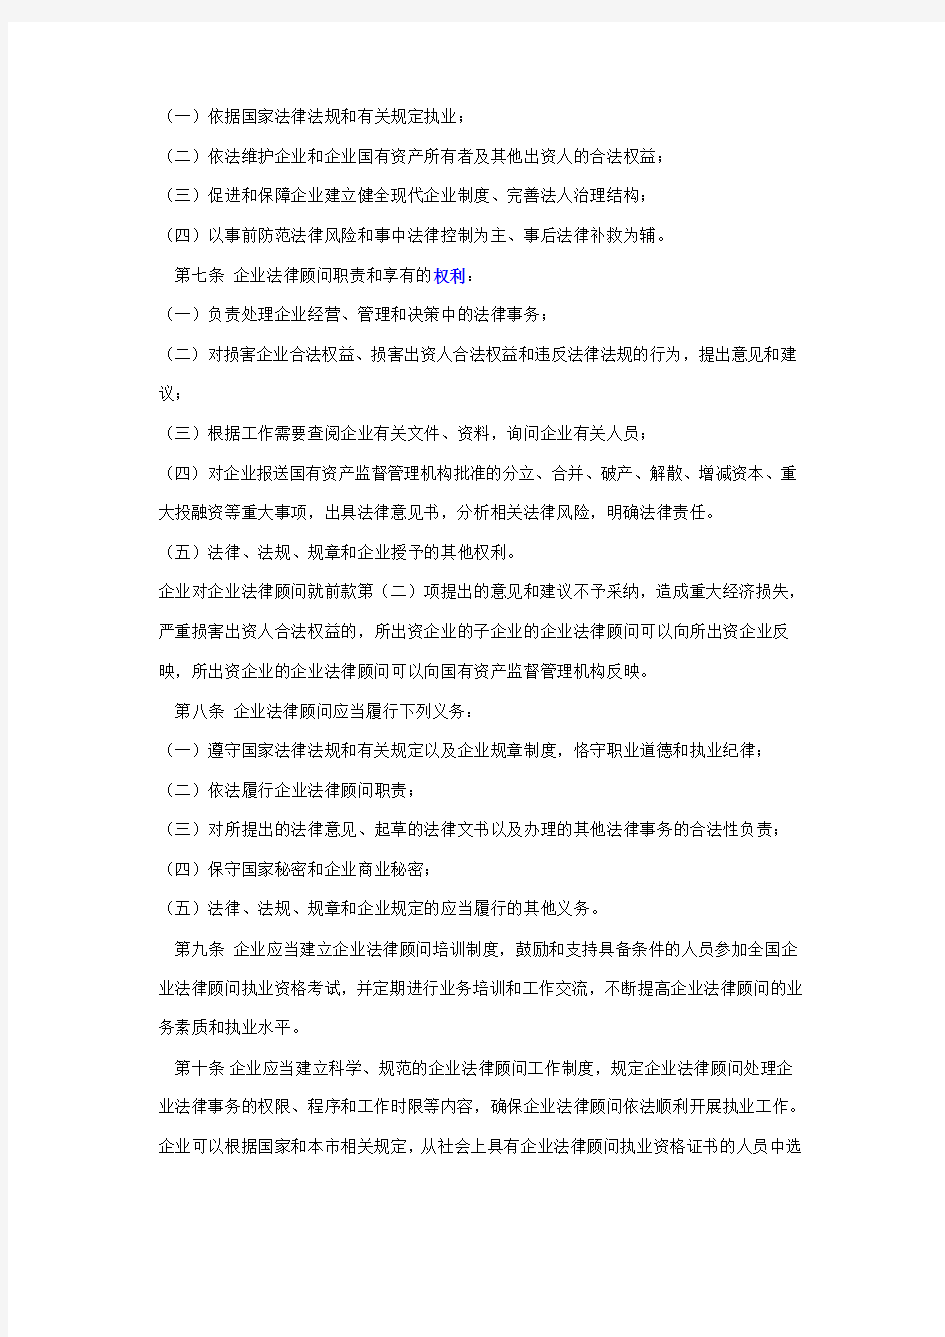 天津市实施《国有企业法律顾问管理办法》细则